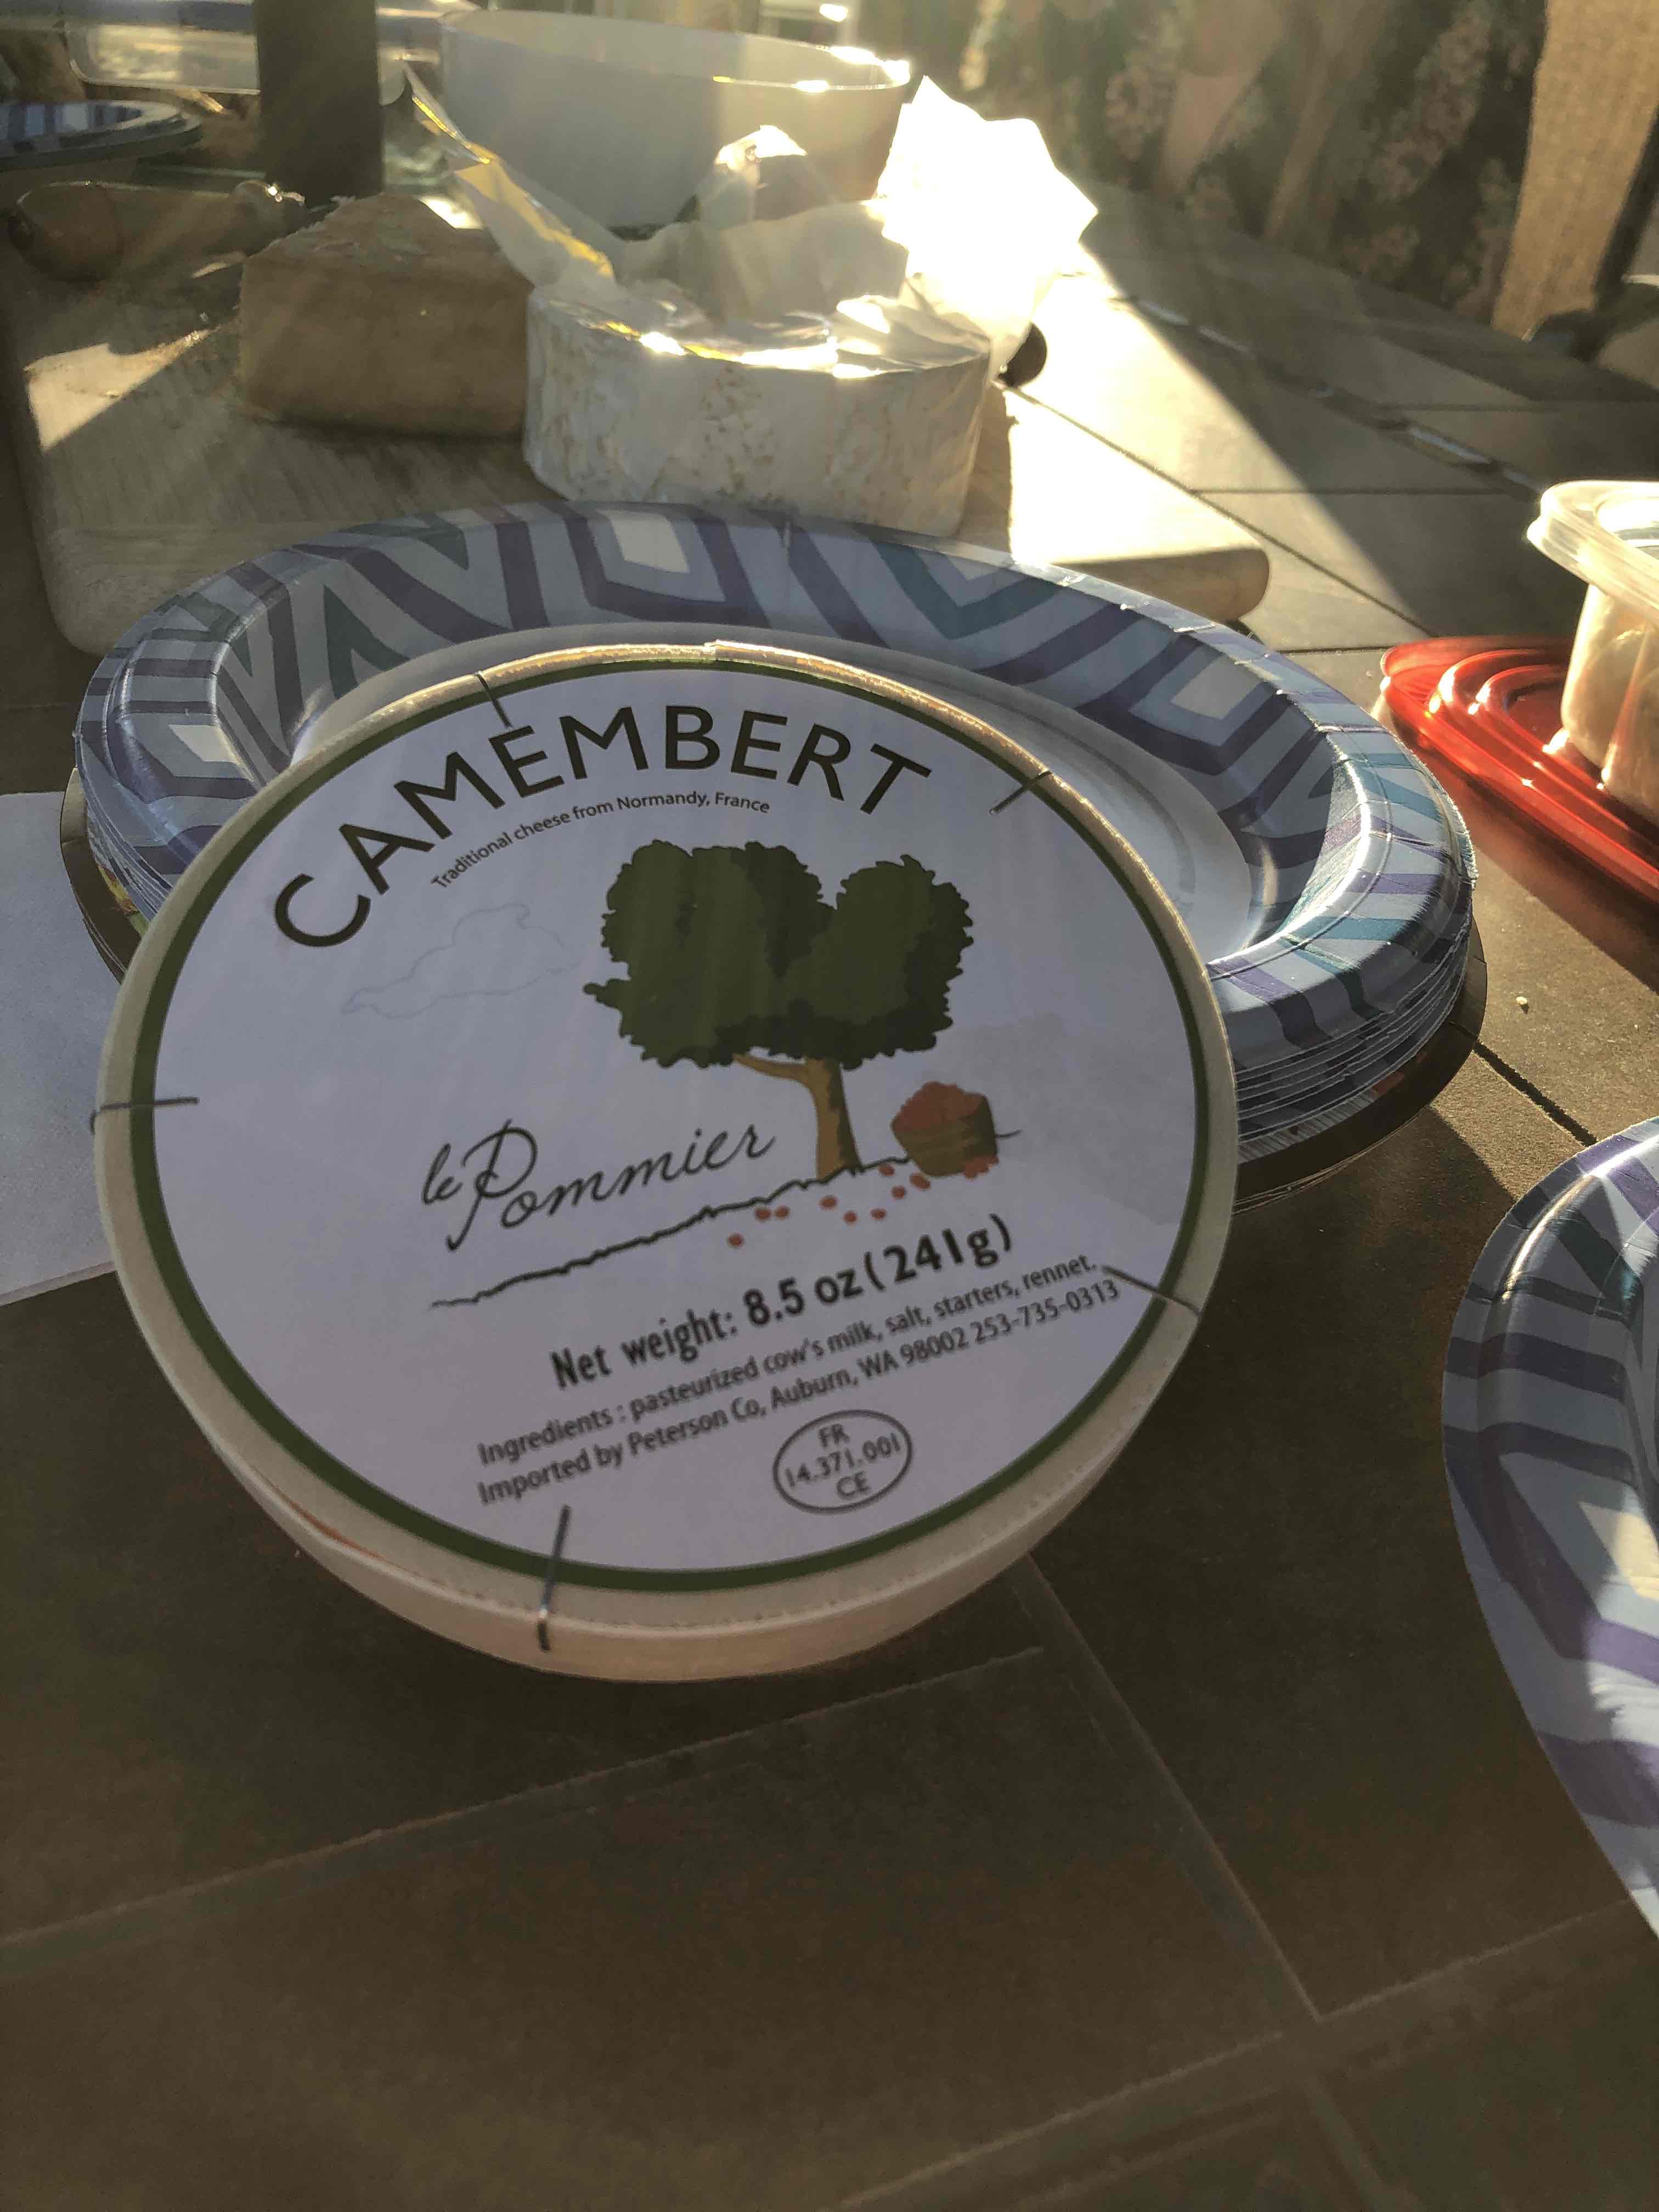 Camembert Le Pommier